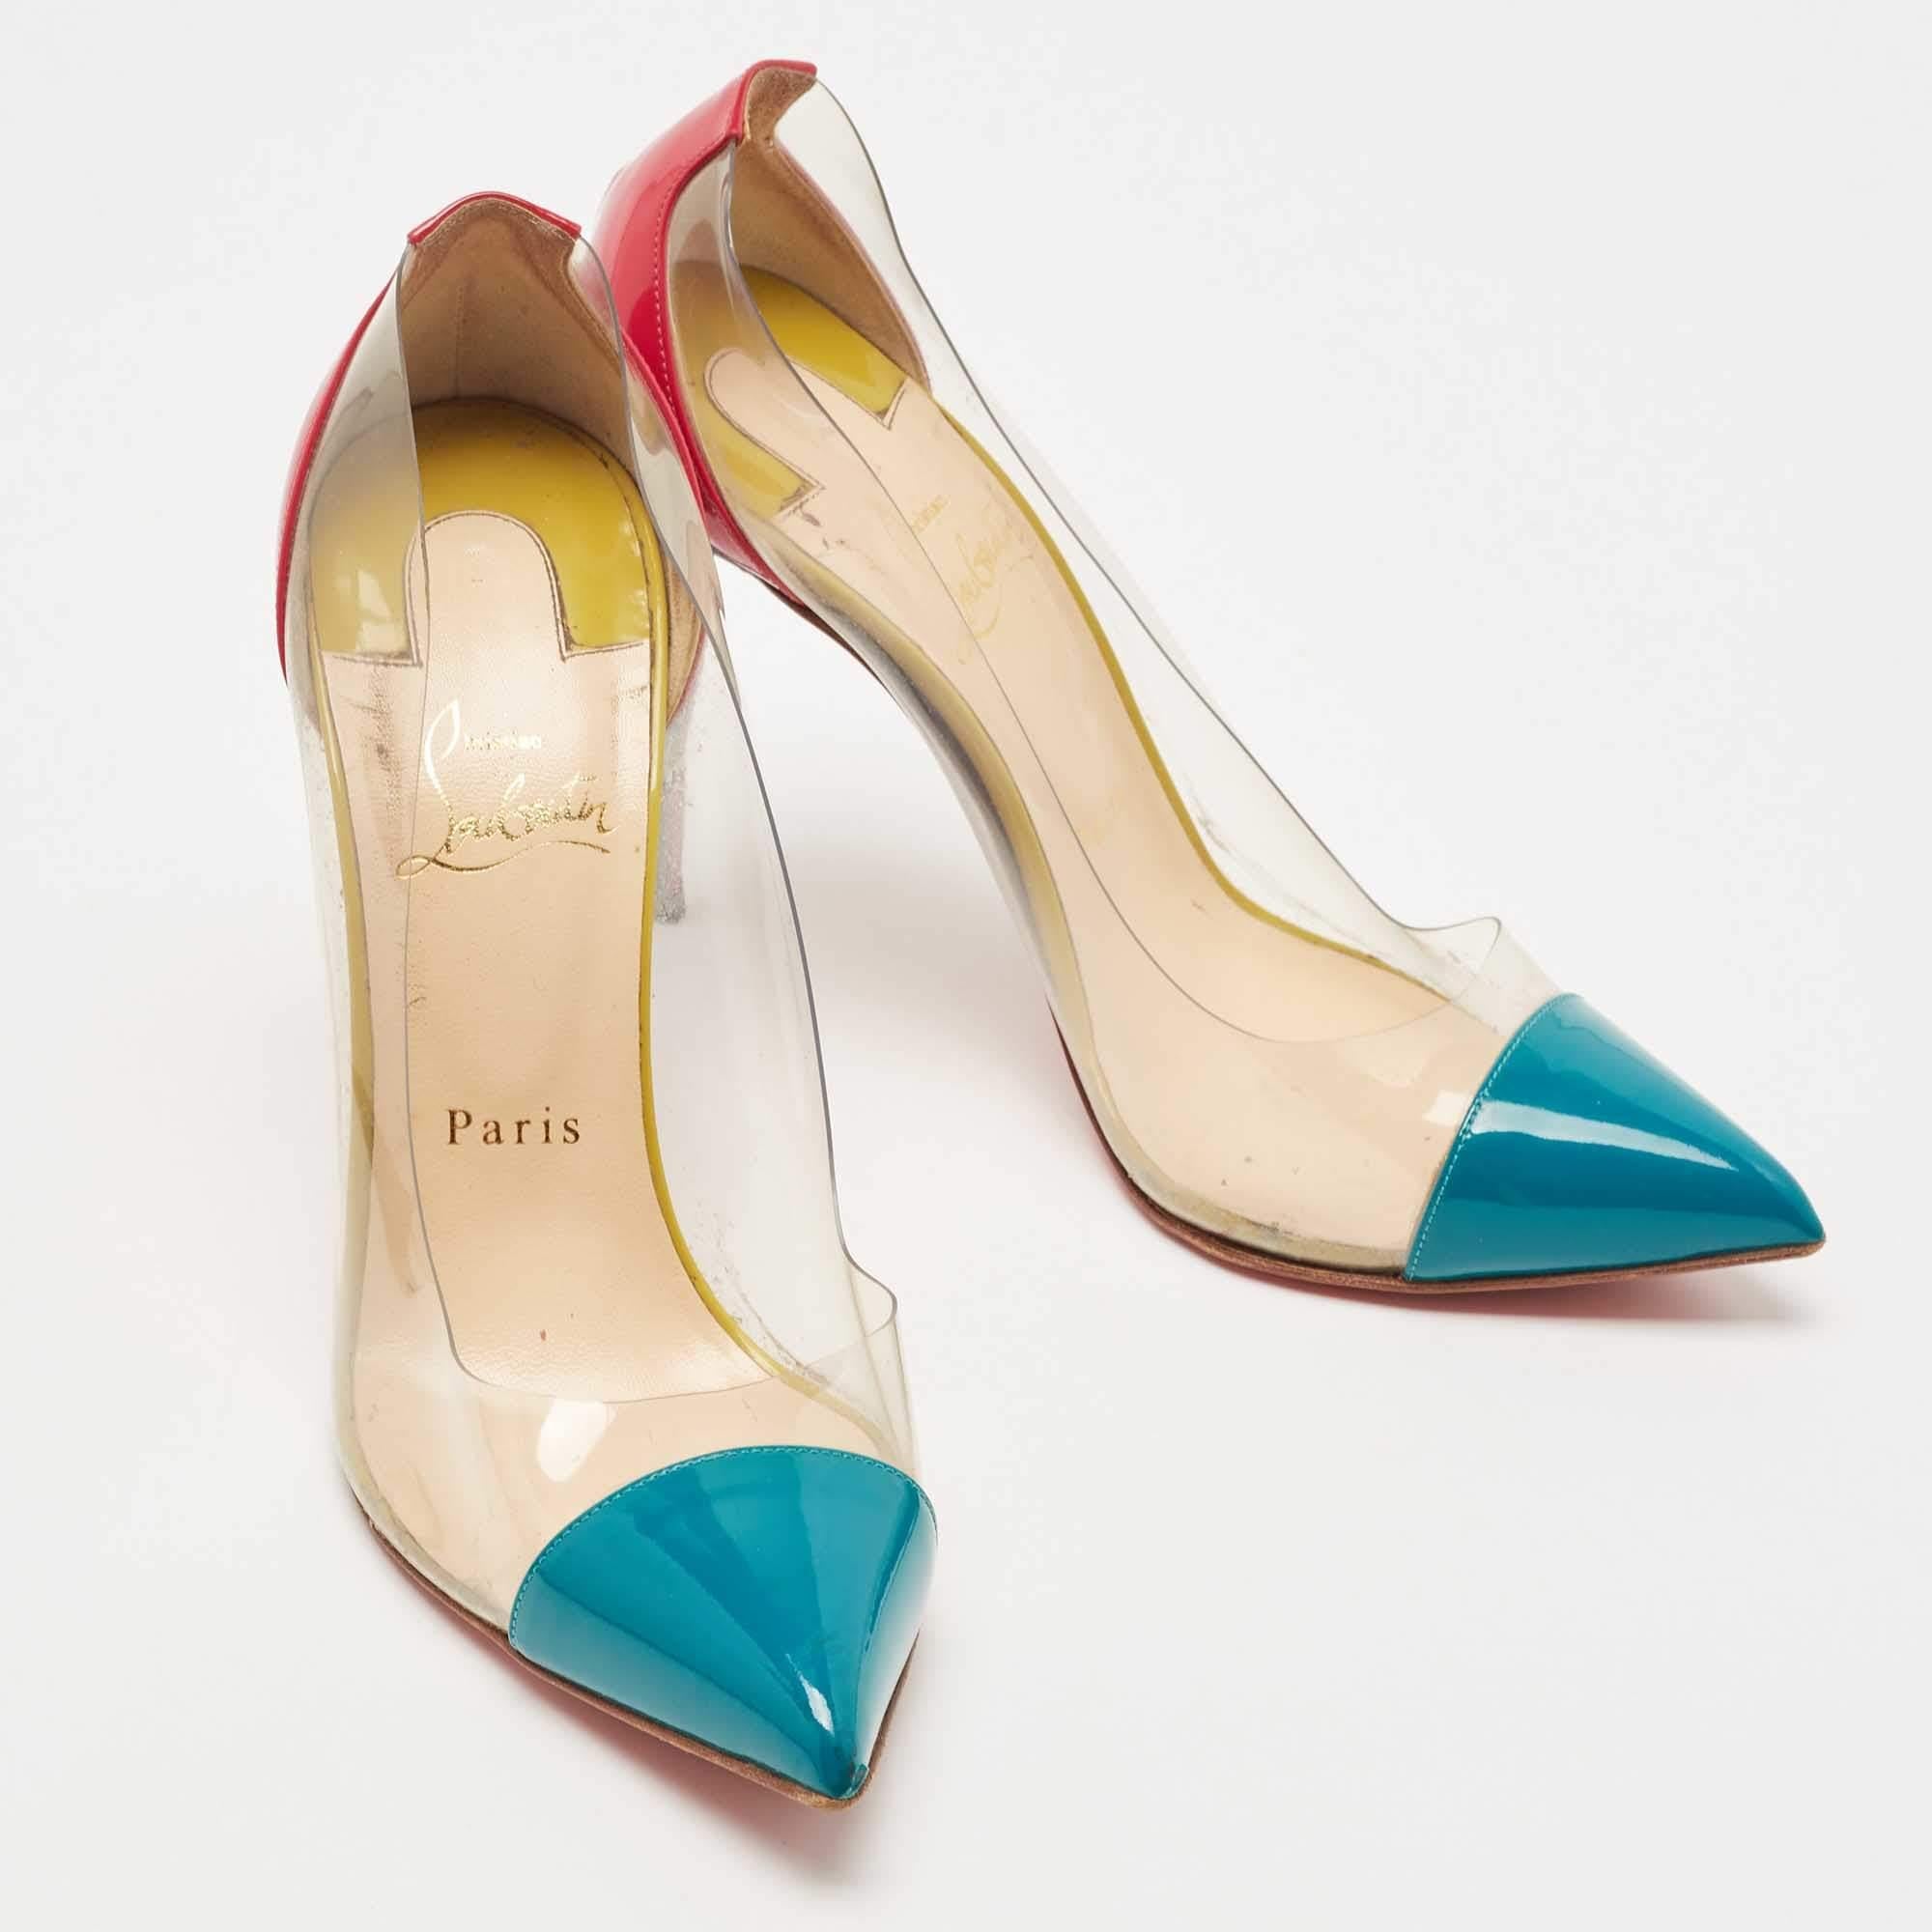 L'esthétique intemporelle de Christian Louboutin et son savoir-faire artisanal en matière de fabrication de chaussures sont évidents dans ces superbes escarpins Debout. Confectionnées en cuir verni noir sur les orteils pointus et le talon, elles